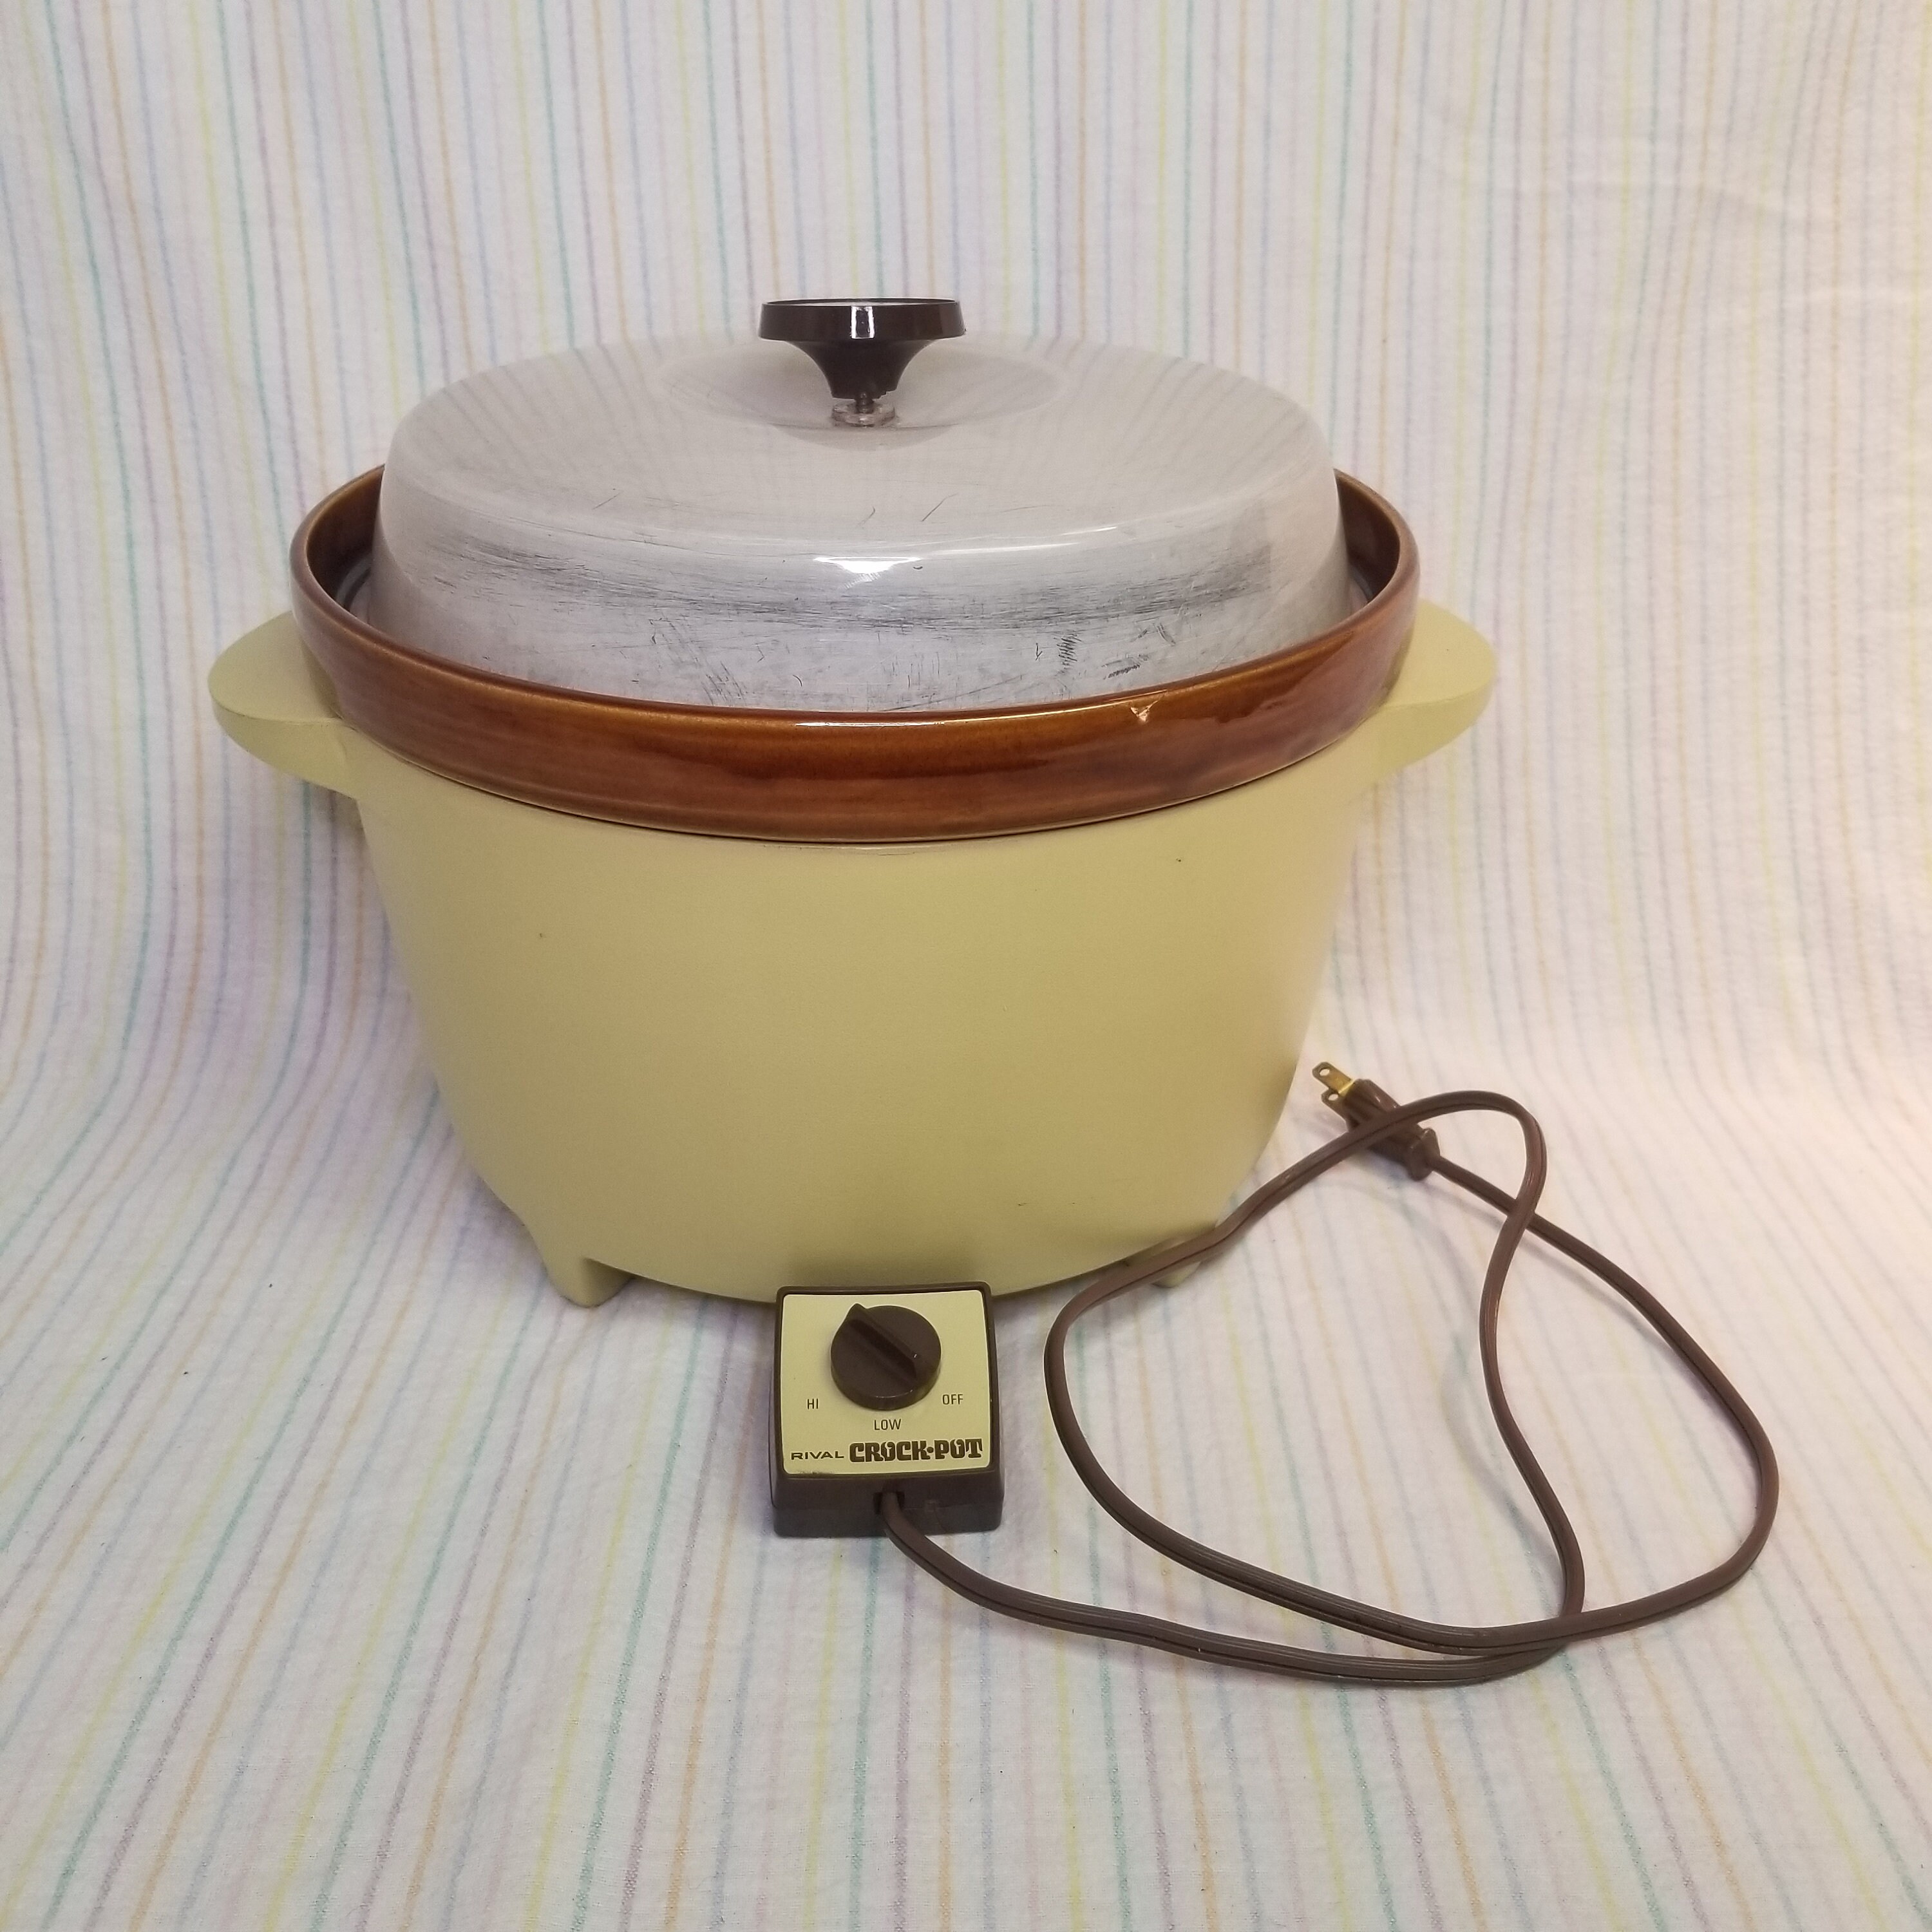 Vintage Rival Crock-Ette 1 Quart Crock Pot CIB Slow Cook Home Eat Travel  Family